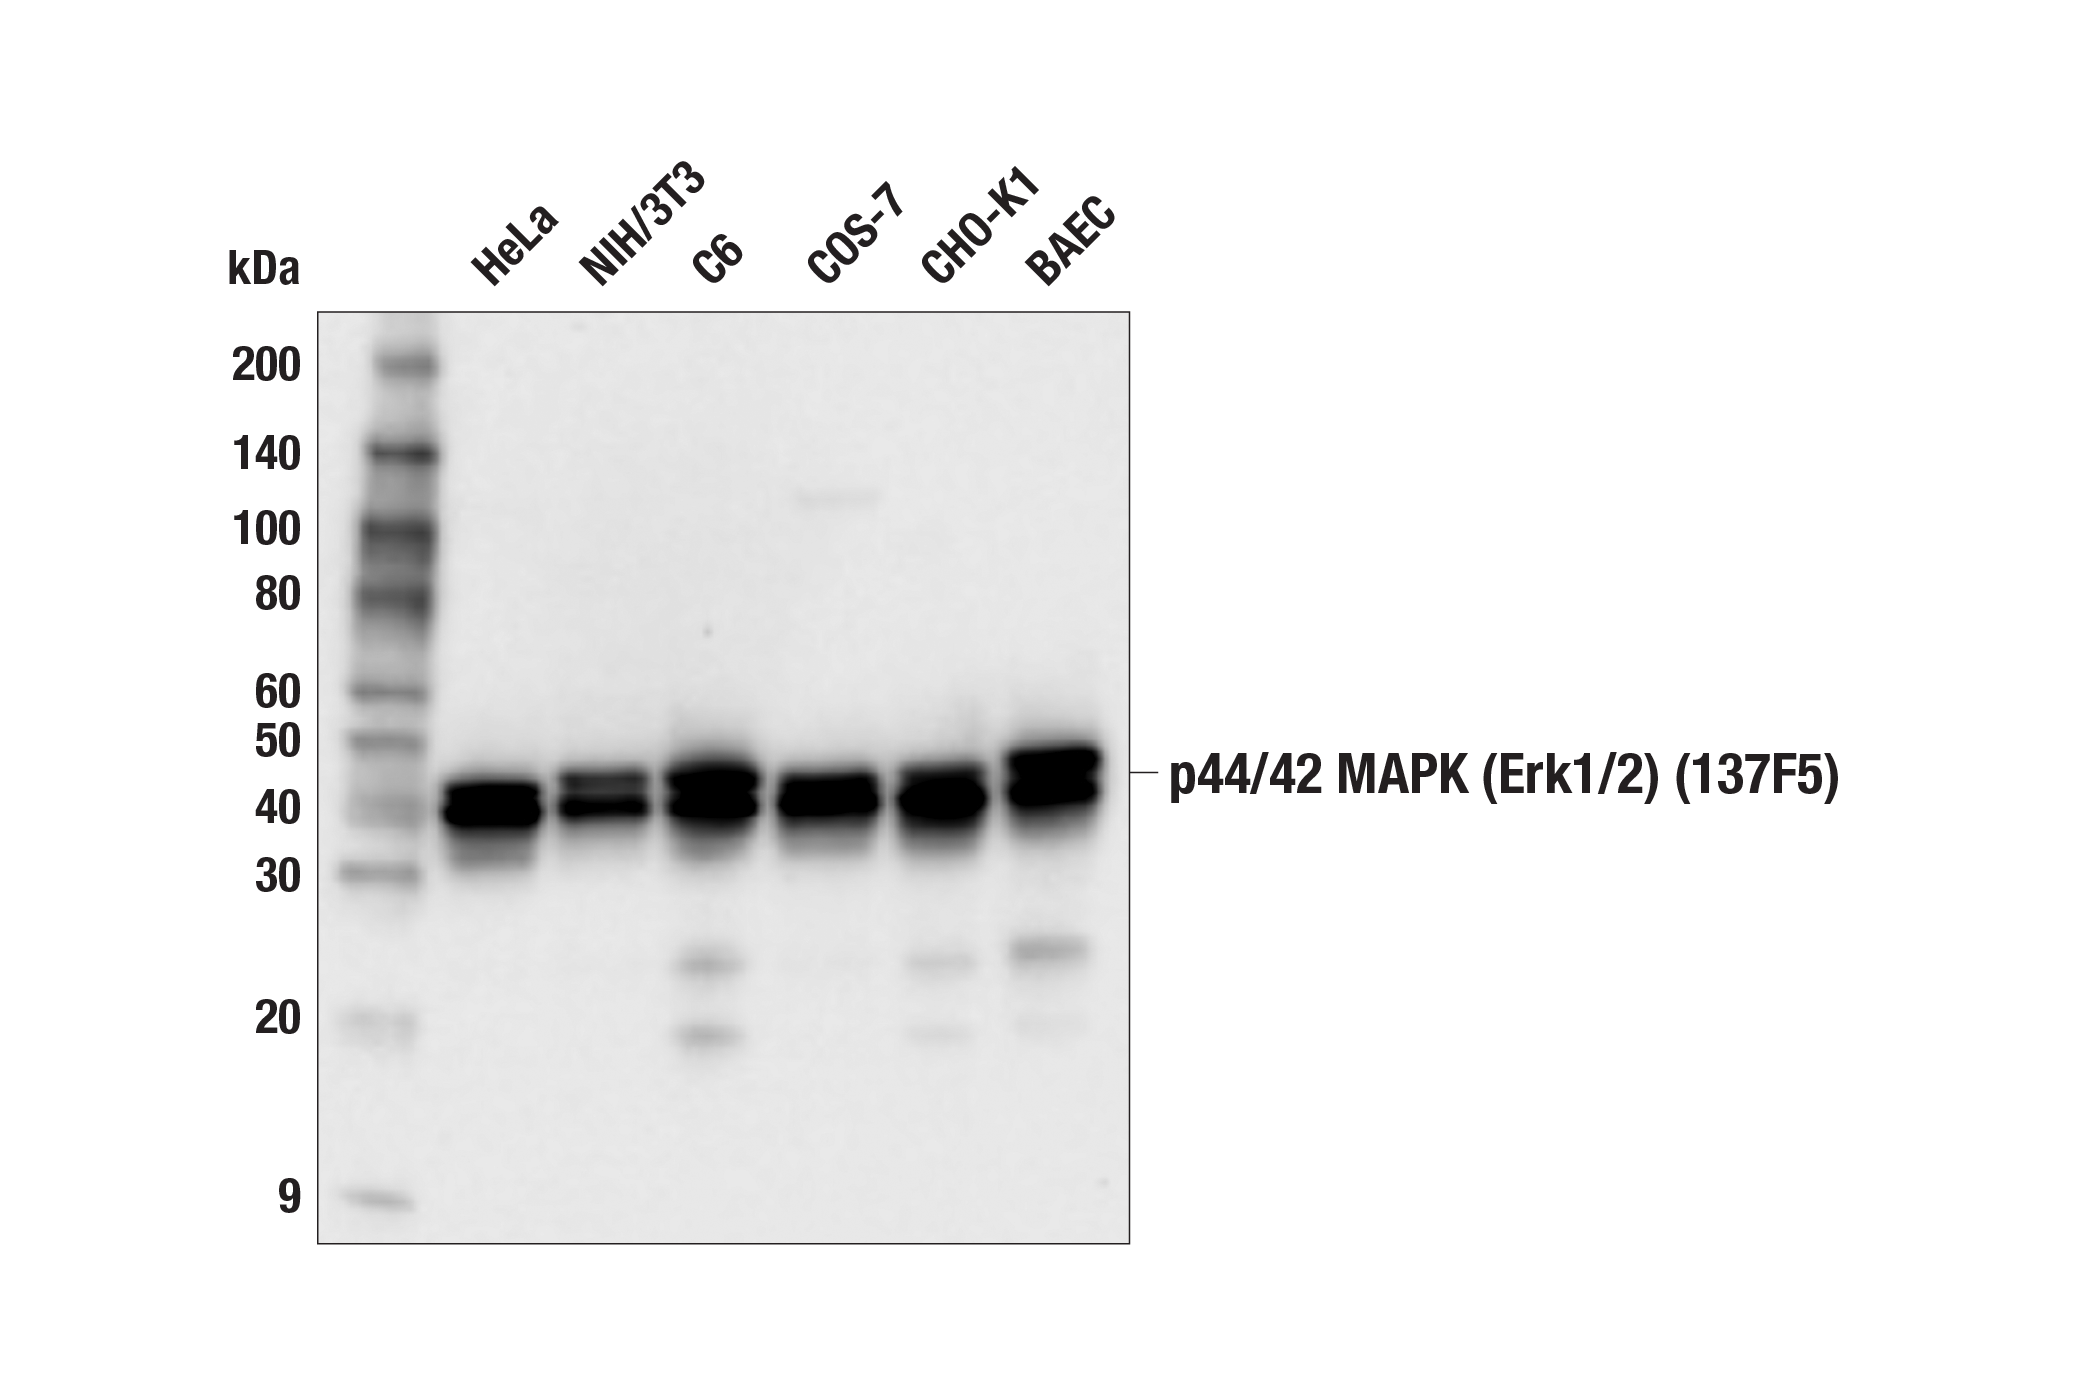  Image 4: PhosphoPlus® p44/42 MAPK (Erk1/2) (Thr202/Tyr204) Antibody Kit